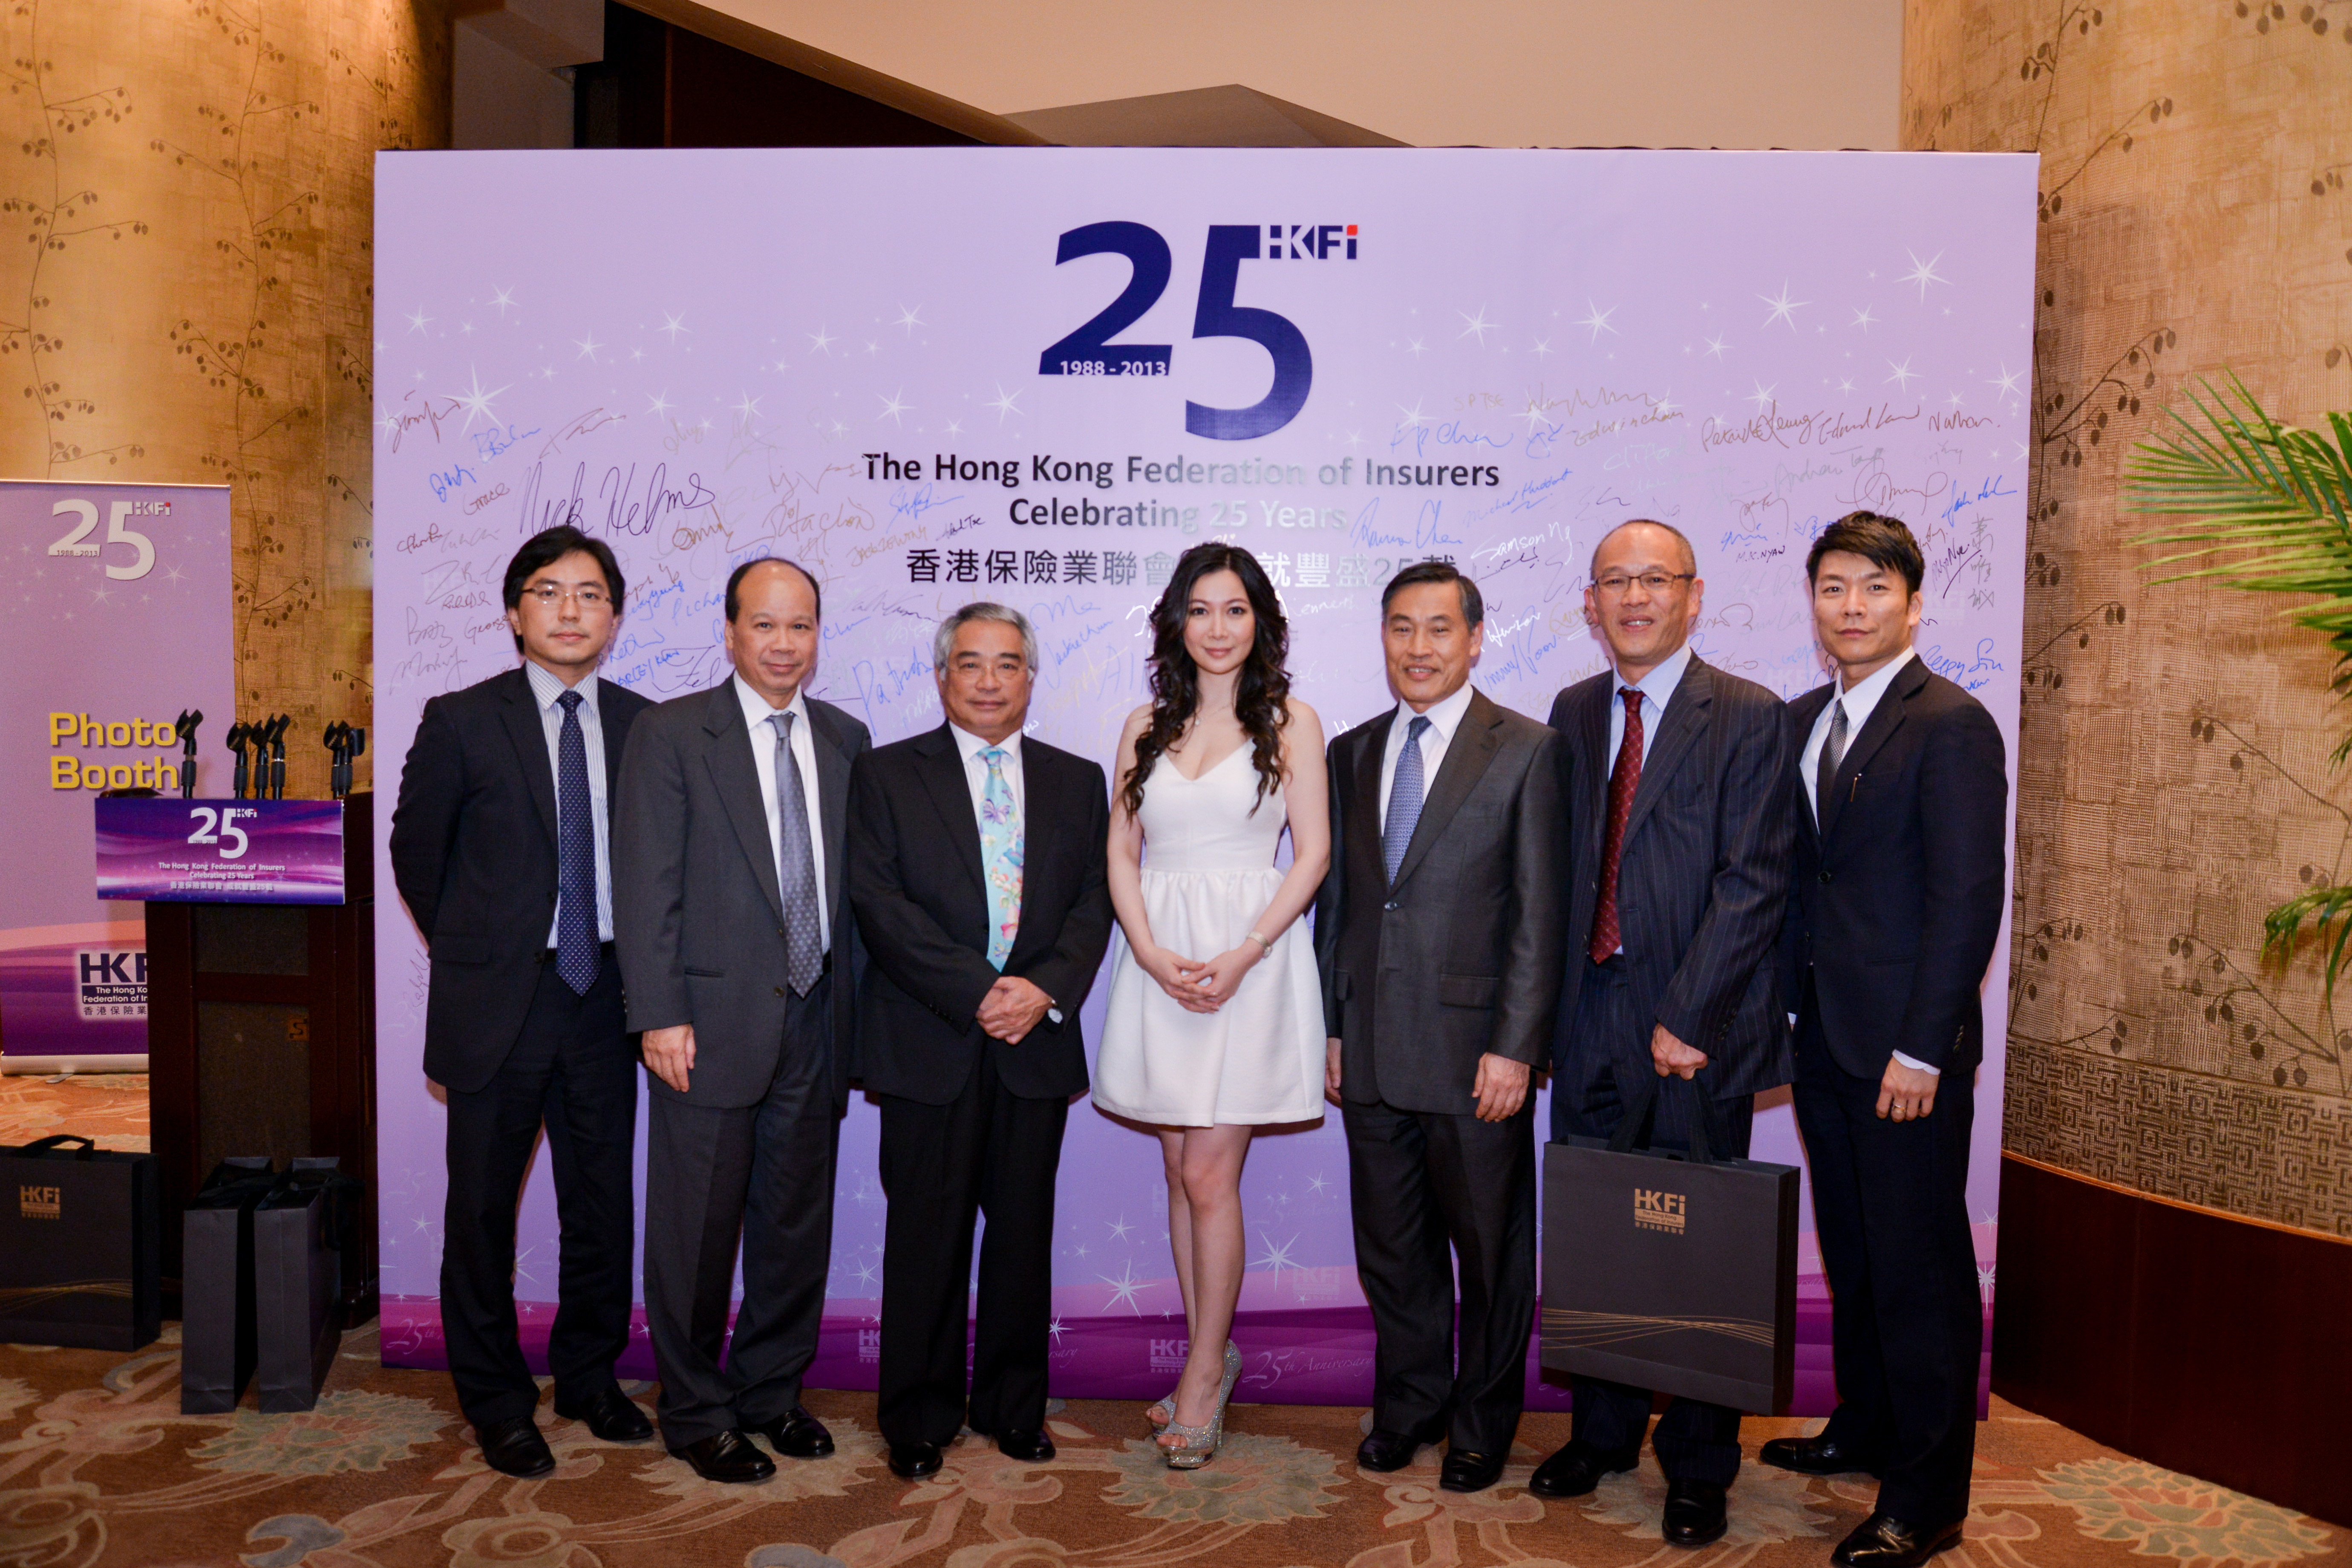 HKFI Celebrating 25 Years – Signing Board (2)